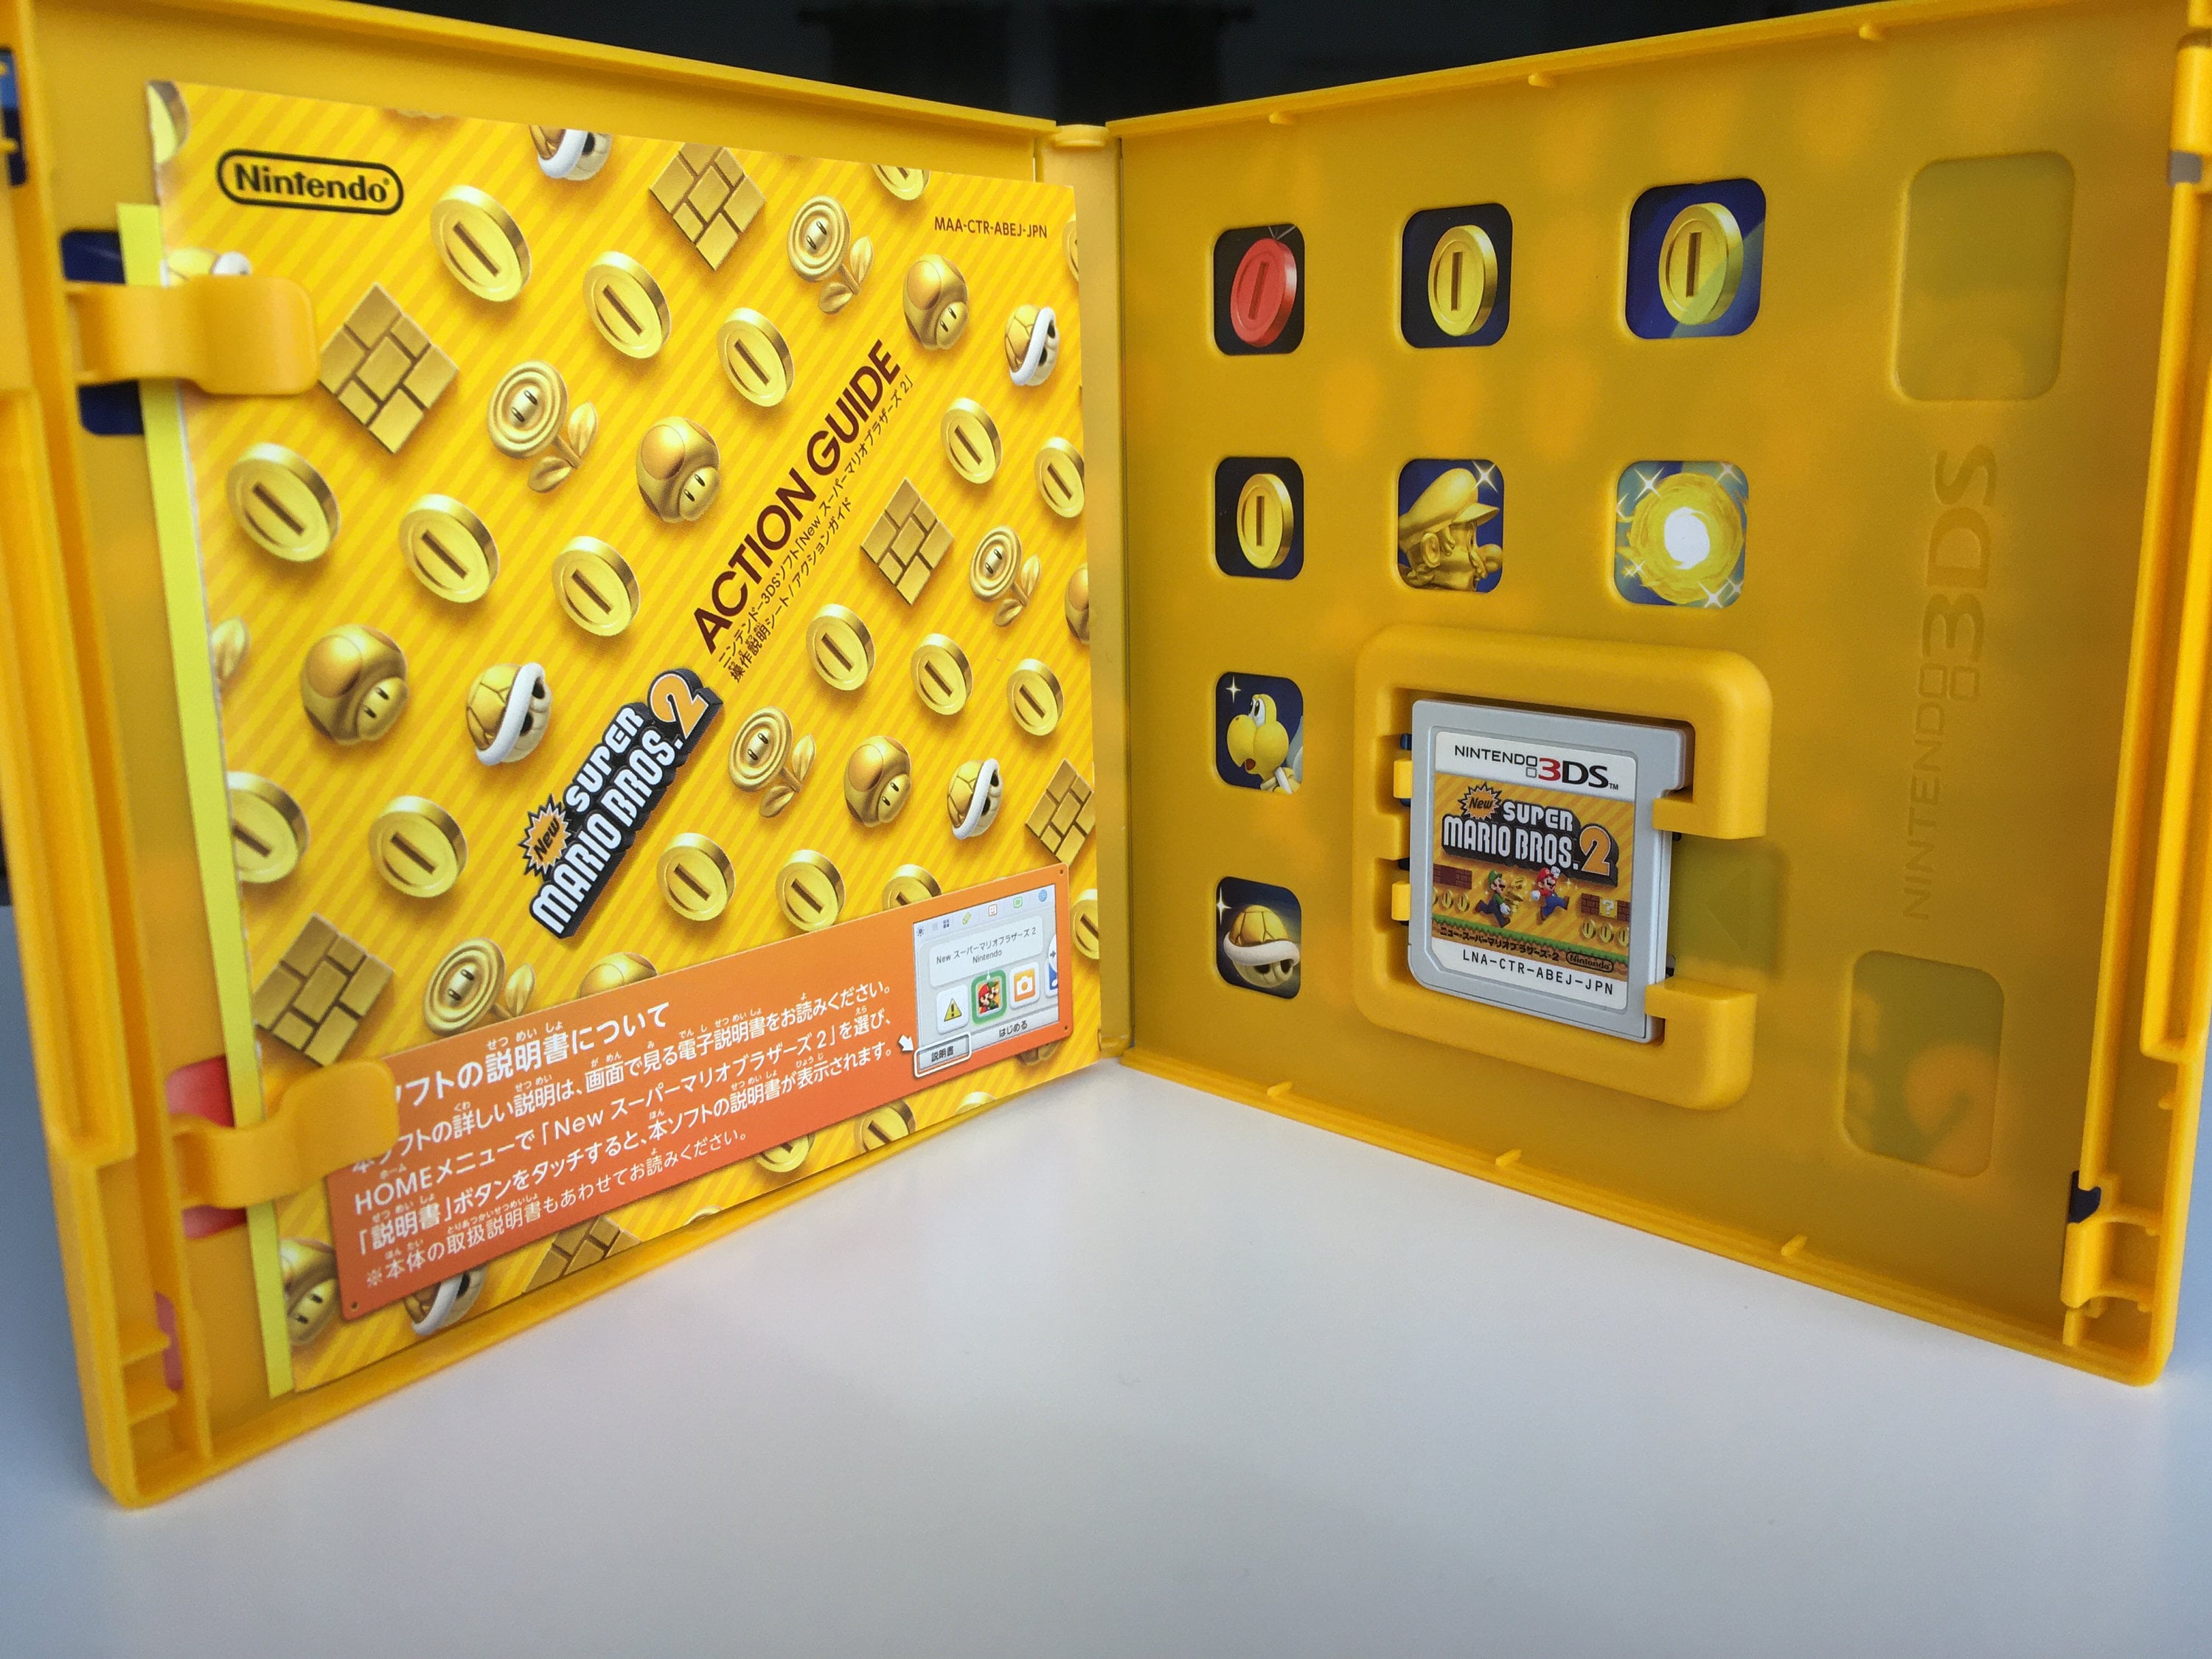 faktum ovn Afvigelse 3DS New Super Mario Bros. 2 Japanese Version CTR-P-ABEJ - Etsy